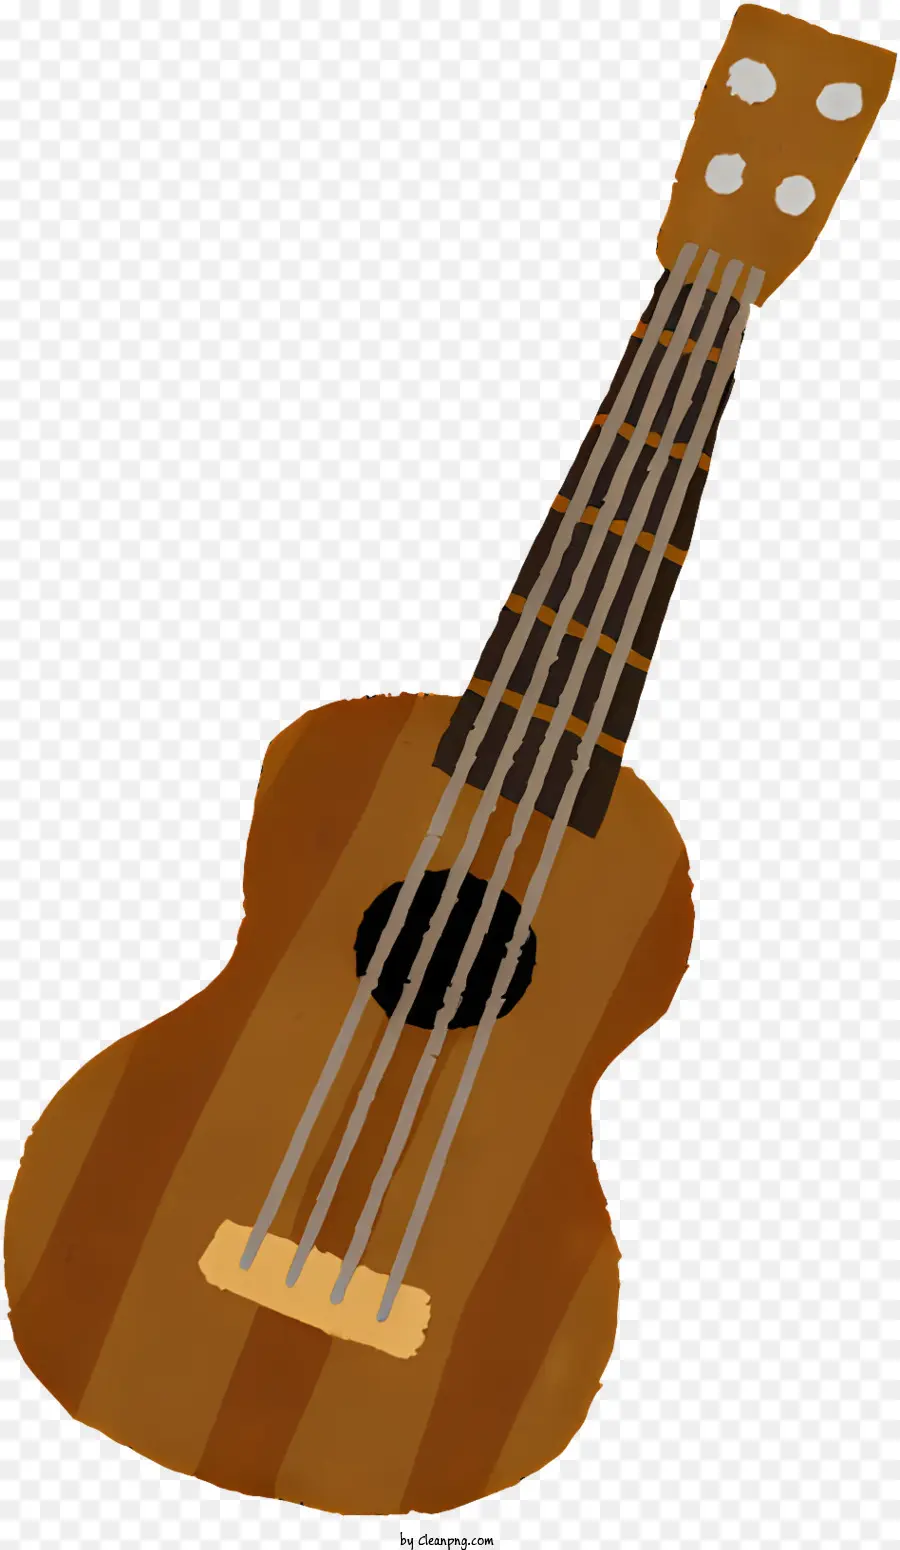 Musik Brown Gitarre Runde Body Gitarrengitarrenbild Gitarrenhals - Bild der braunen Gitarre mit rundem Körper und Saiten